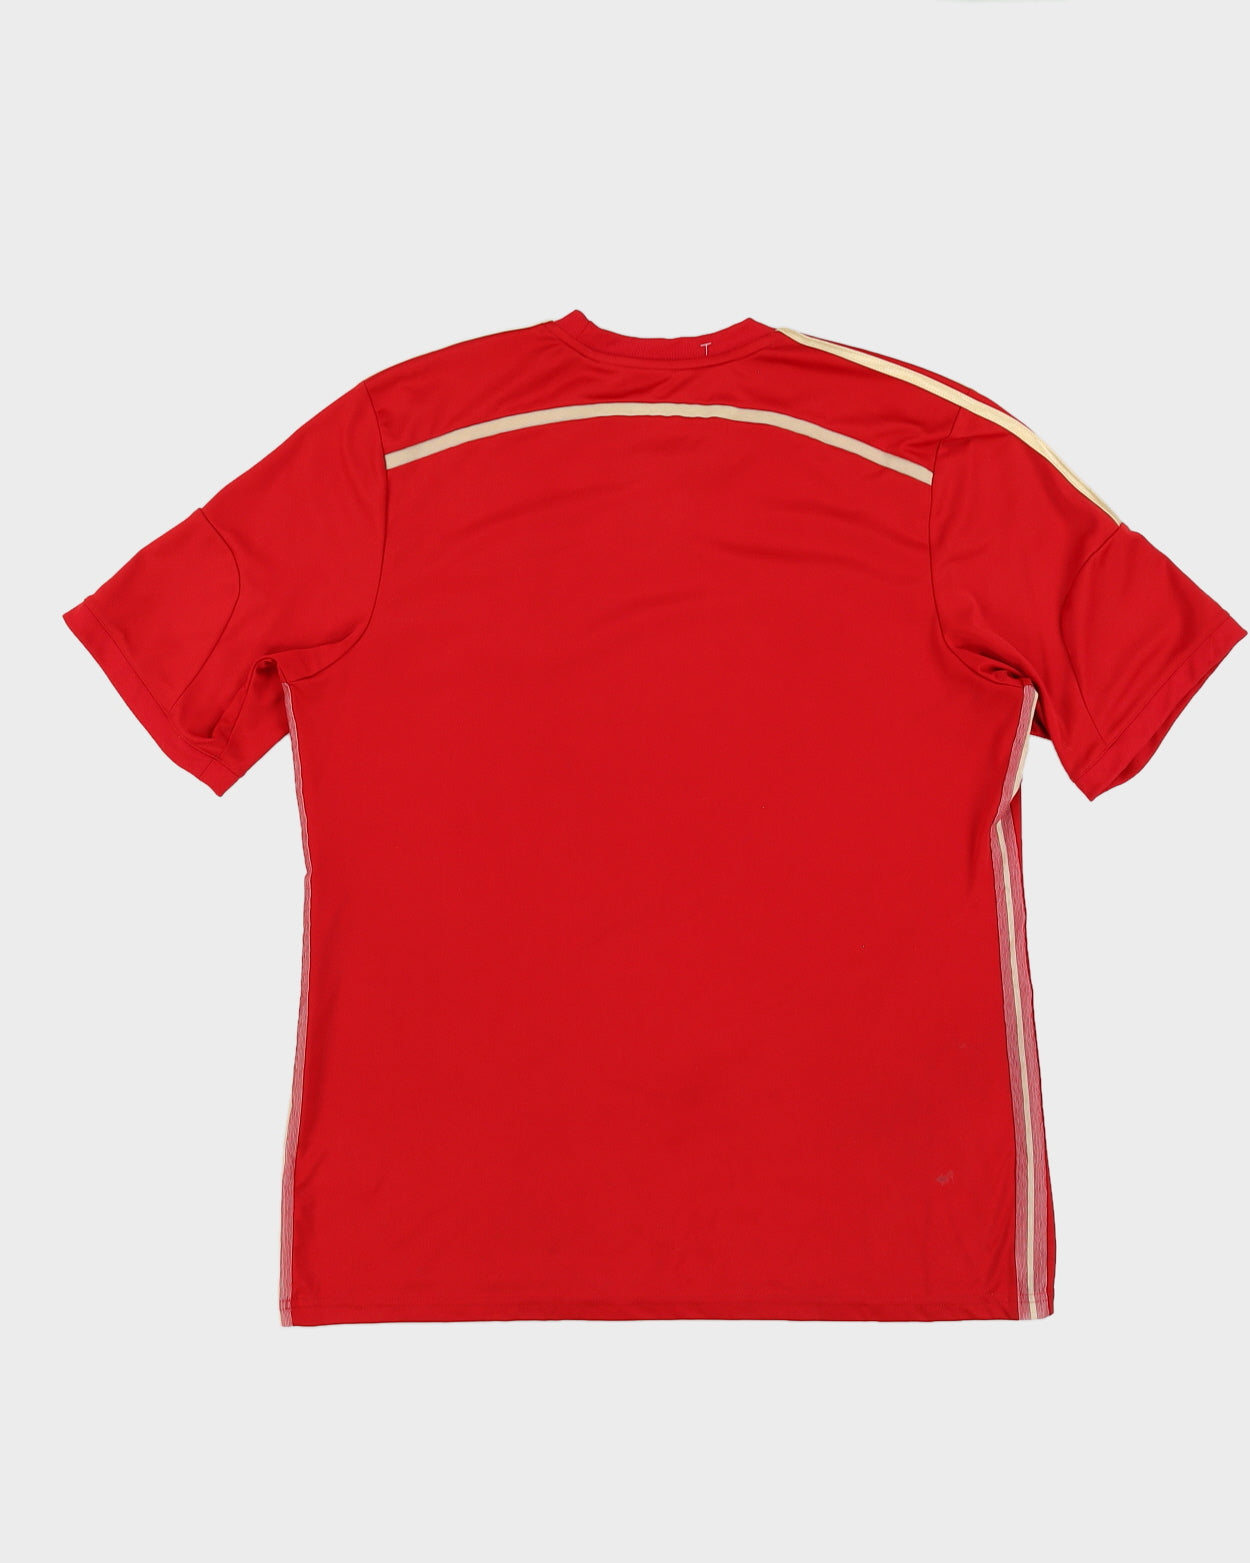 2014 Adidas Spain Home Football Shirt - L